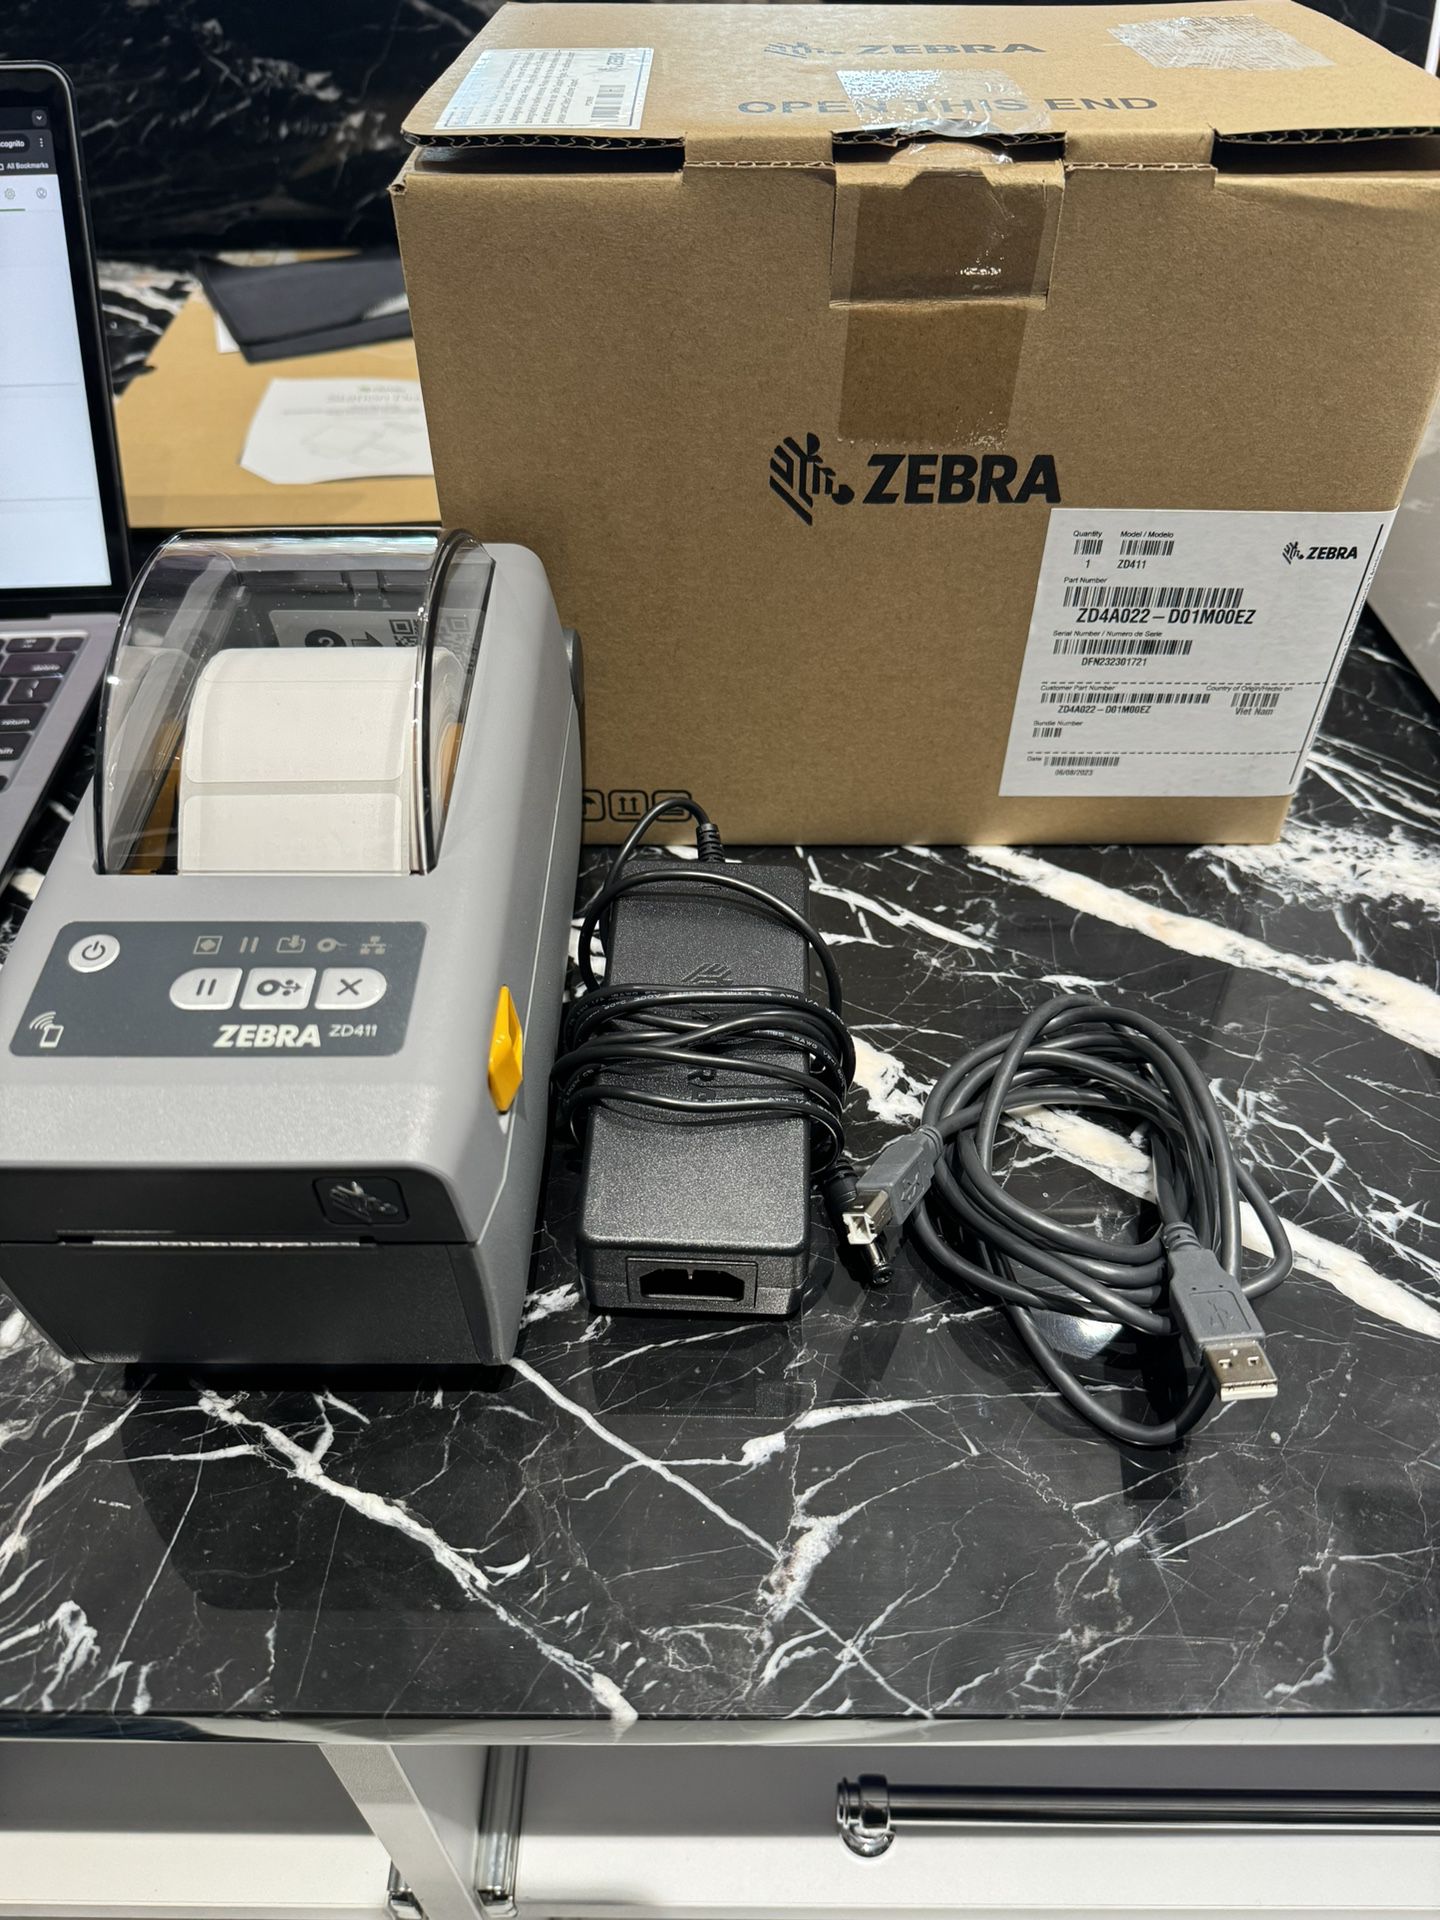 Zebra ZD411 Label Printer